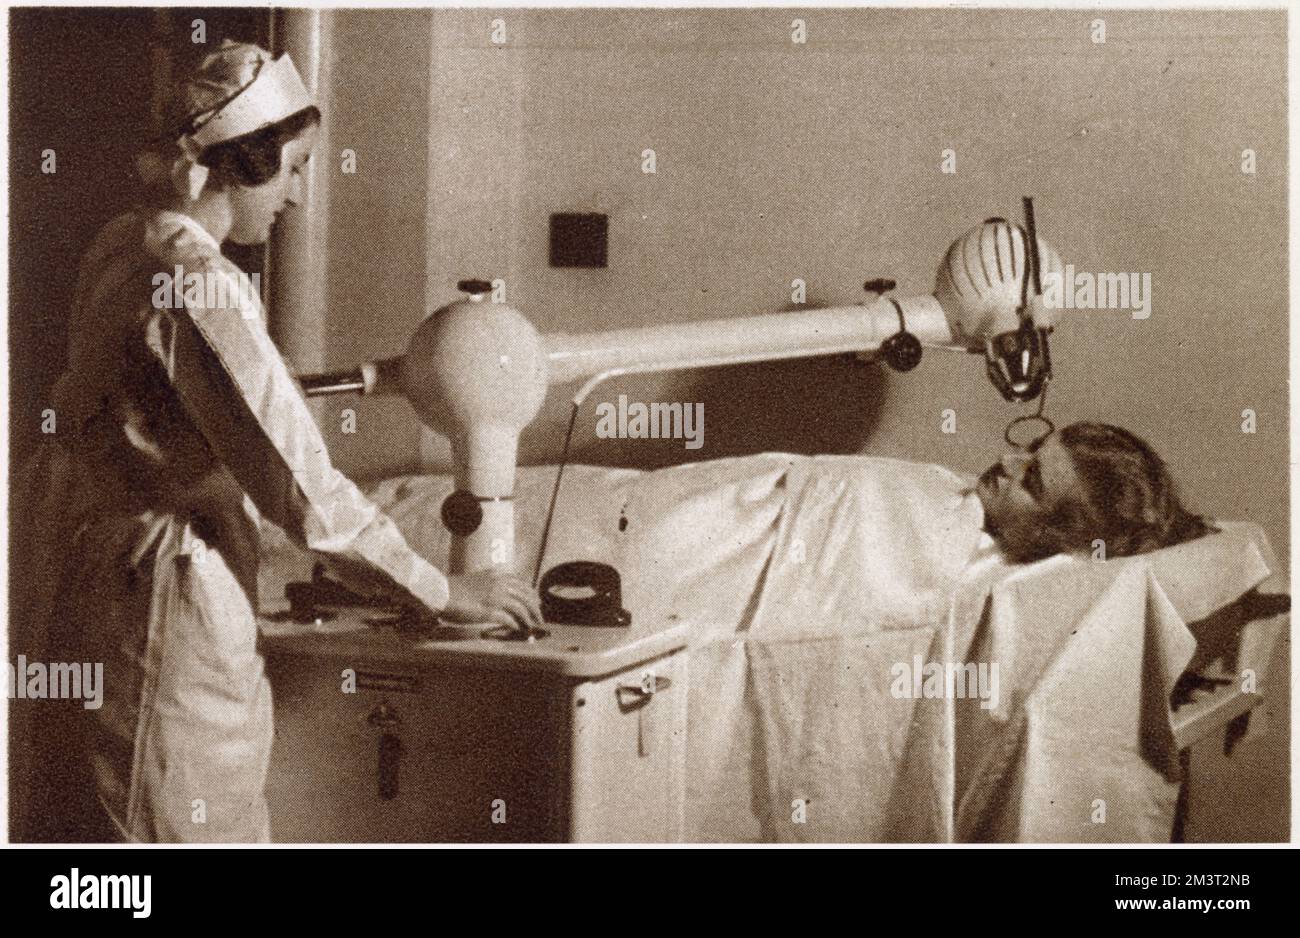 Ein Heilmittel für Gesichtsfehler: Der Siemens-Reiniger Apparat, Behandlung mit Röntgenstrahlen, um alles von einer winzigen Warze bis zu einer weit verbreiteten Hautkrankheit zu unterstützen. Datum: 1933 Stockfoto